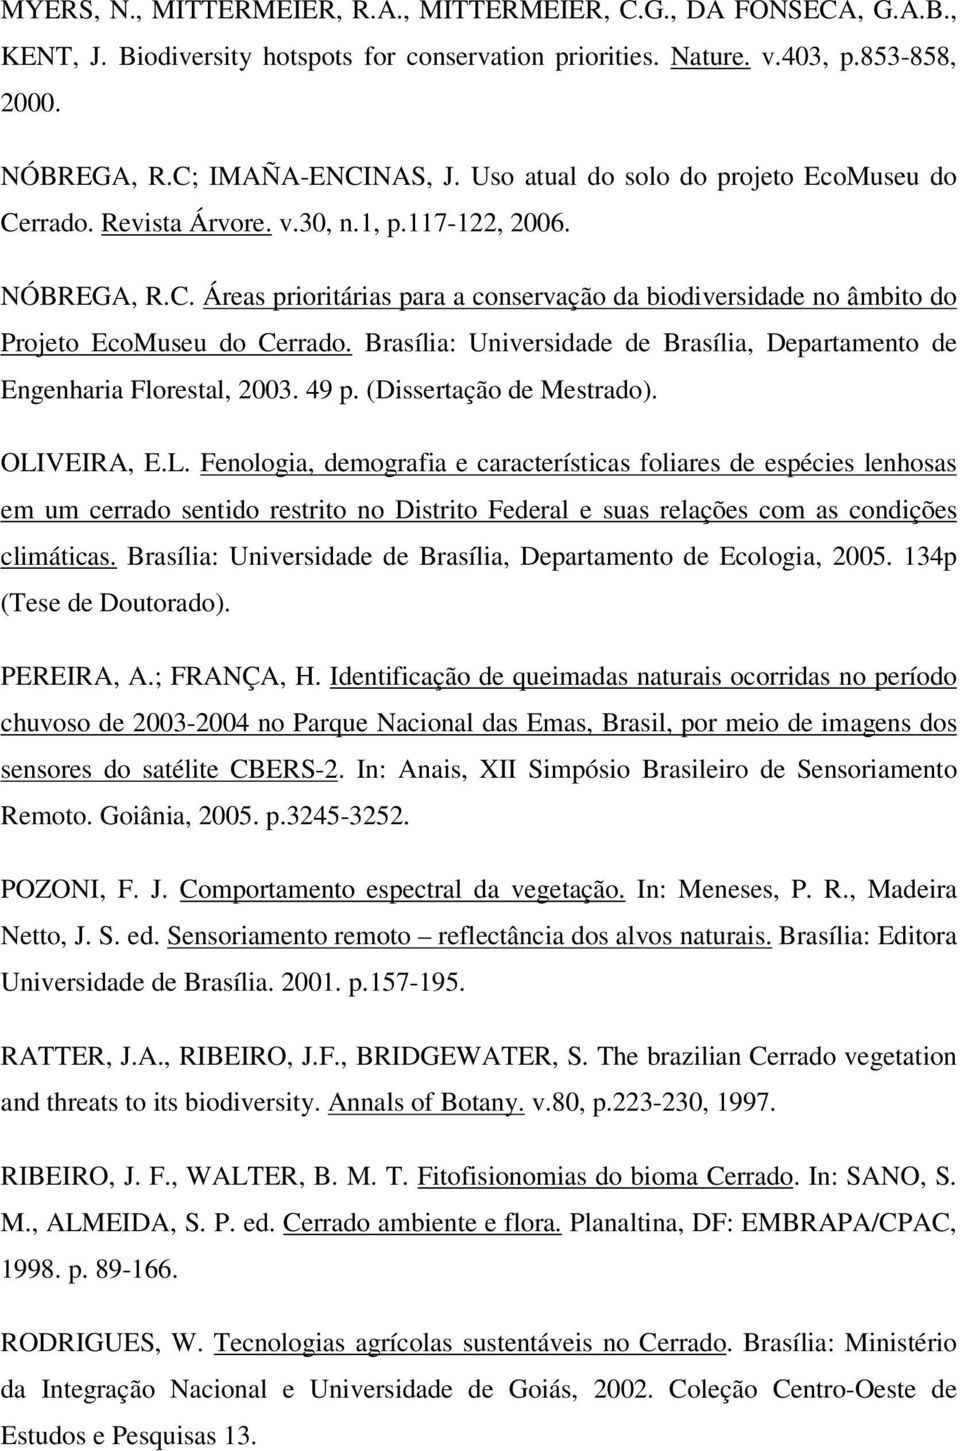 Brasília: Universidade de Brasília, Departamento de Engenharia Florestal, 2003. 49 p. (Dissertação de Mestrado). OLI